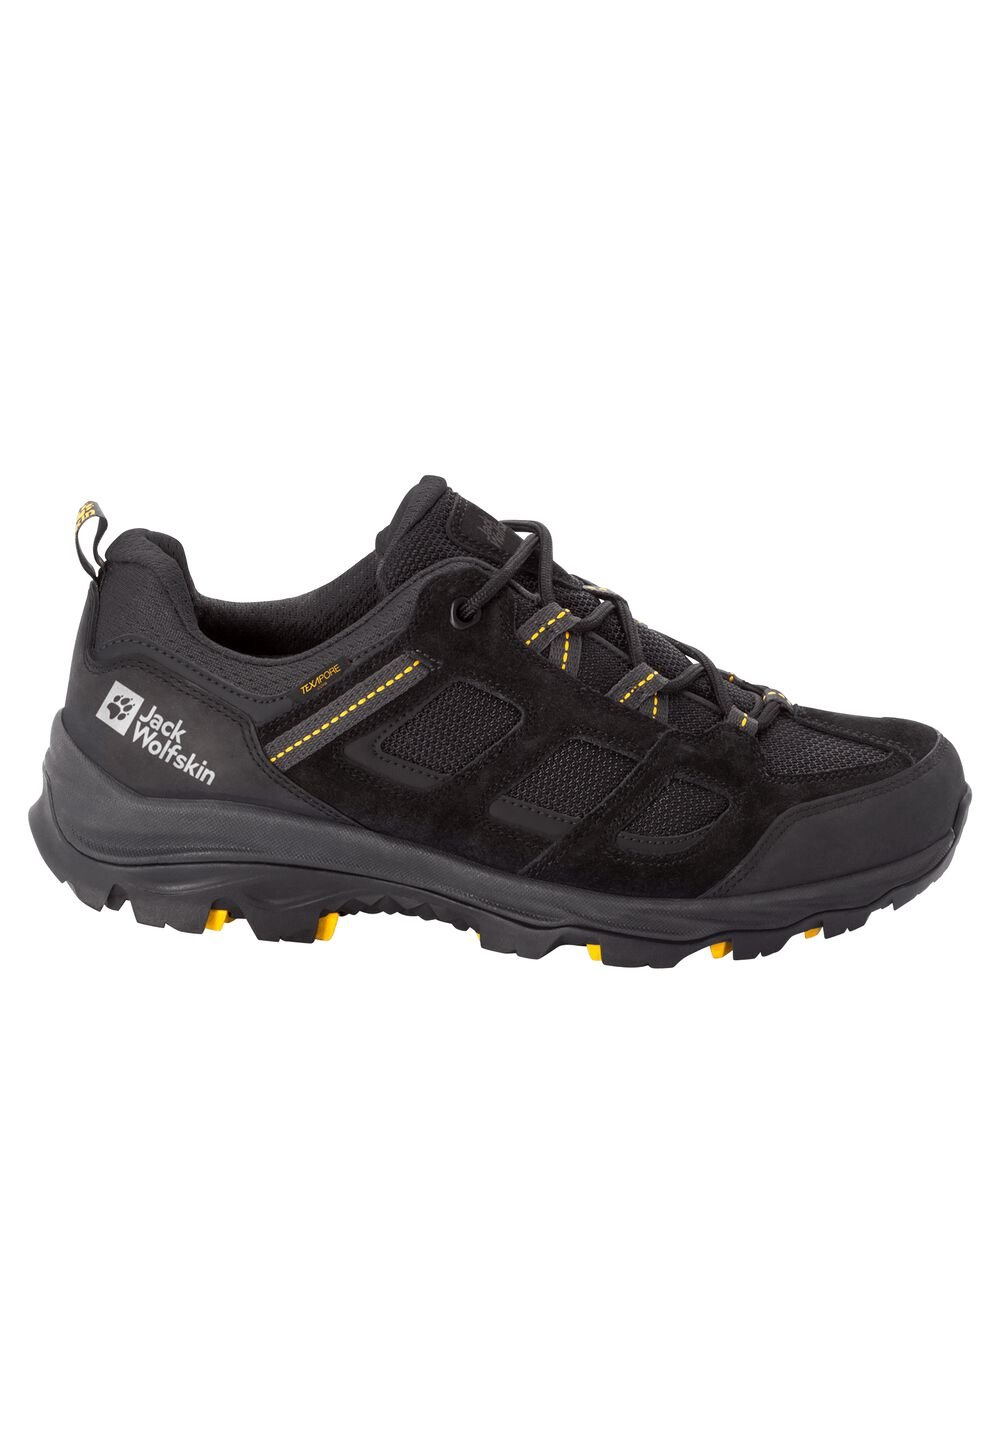 Chaussures de randonnée imperméables hommes Vojo 3 Texapore Low Men 15 noir black / burly yellow XT